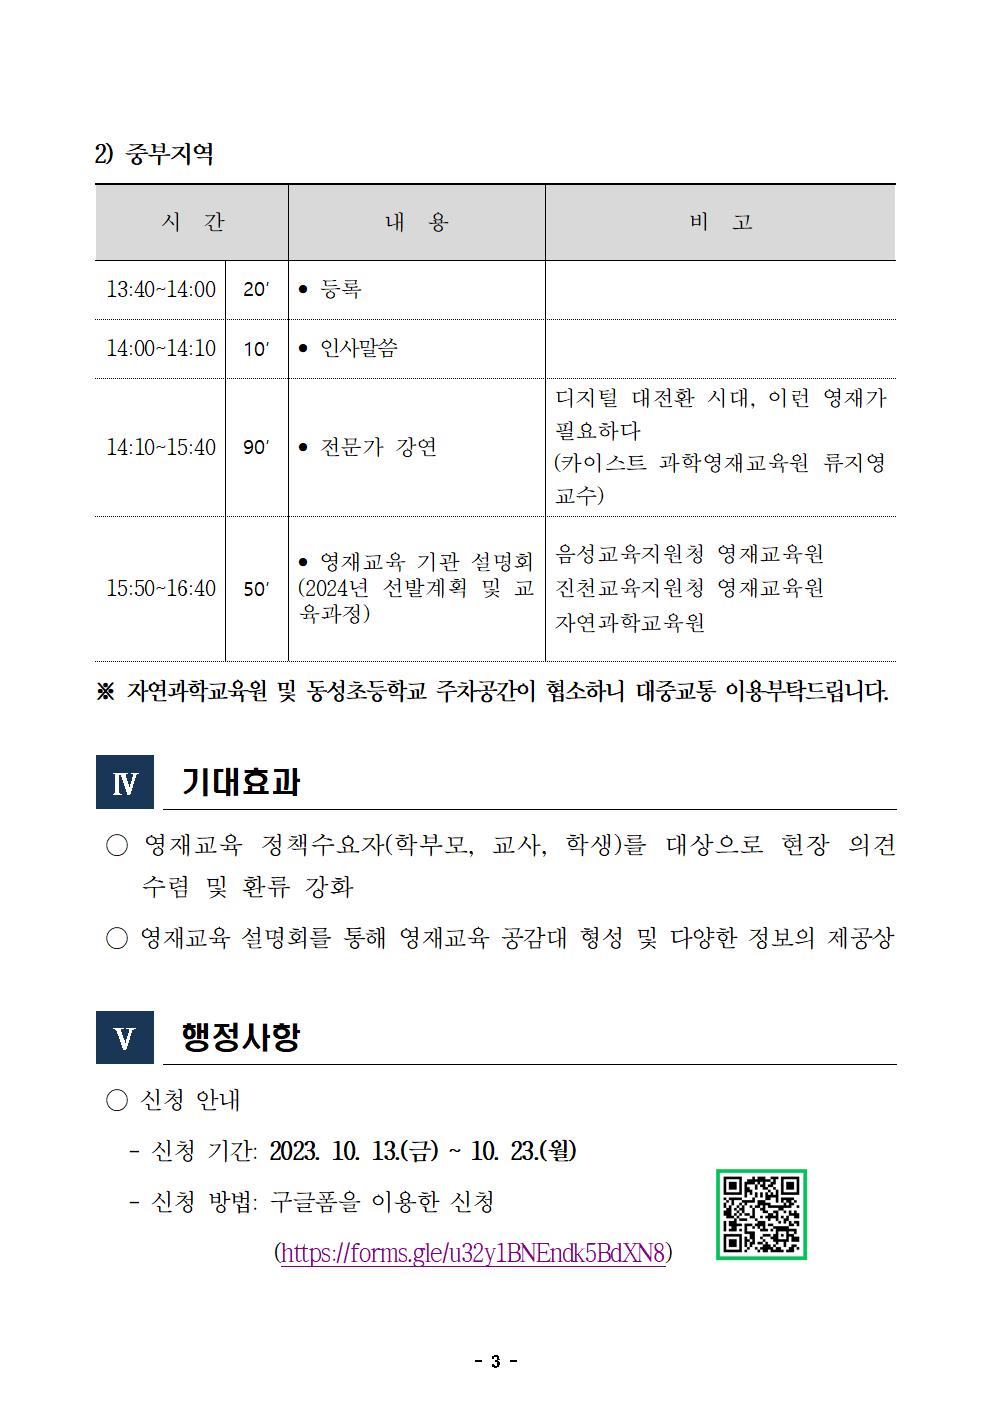 영재교육활성화 연수 및 영재교육기관 설명회 안내003